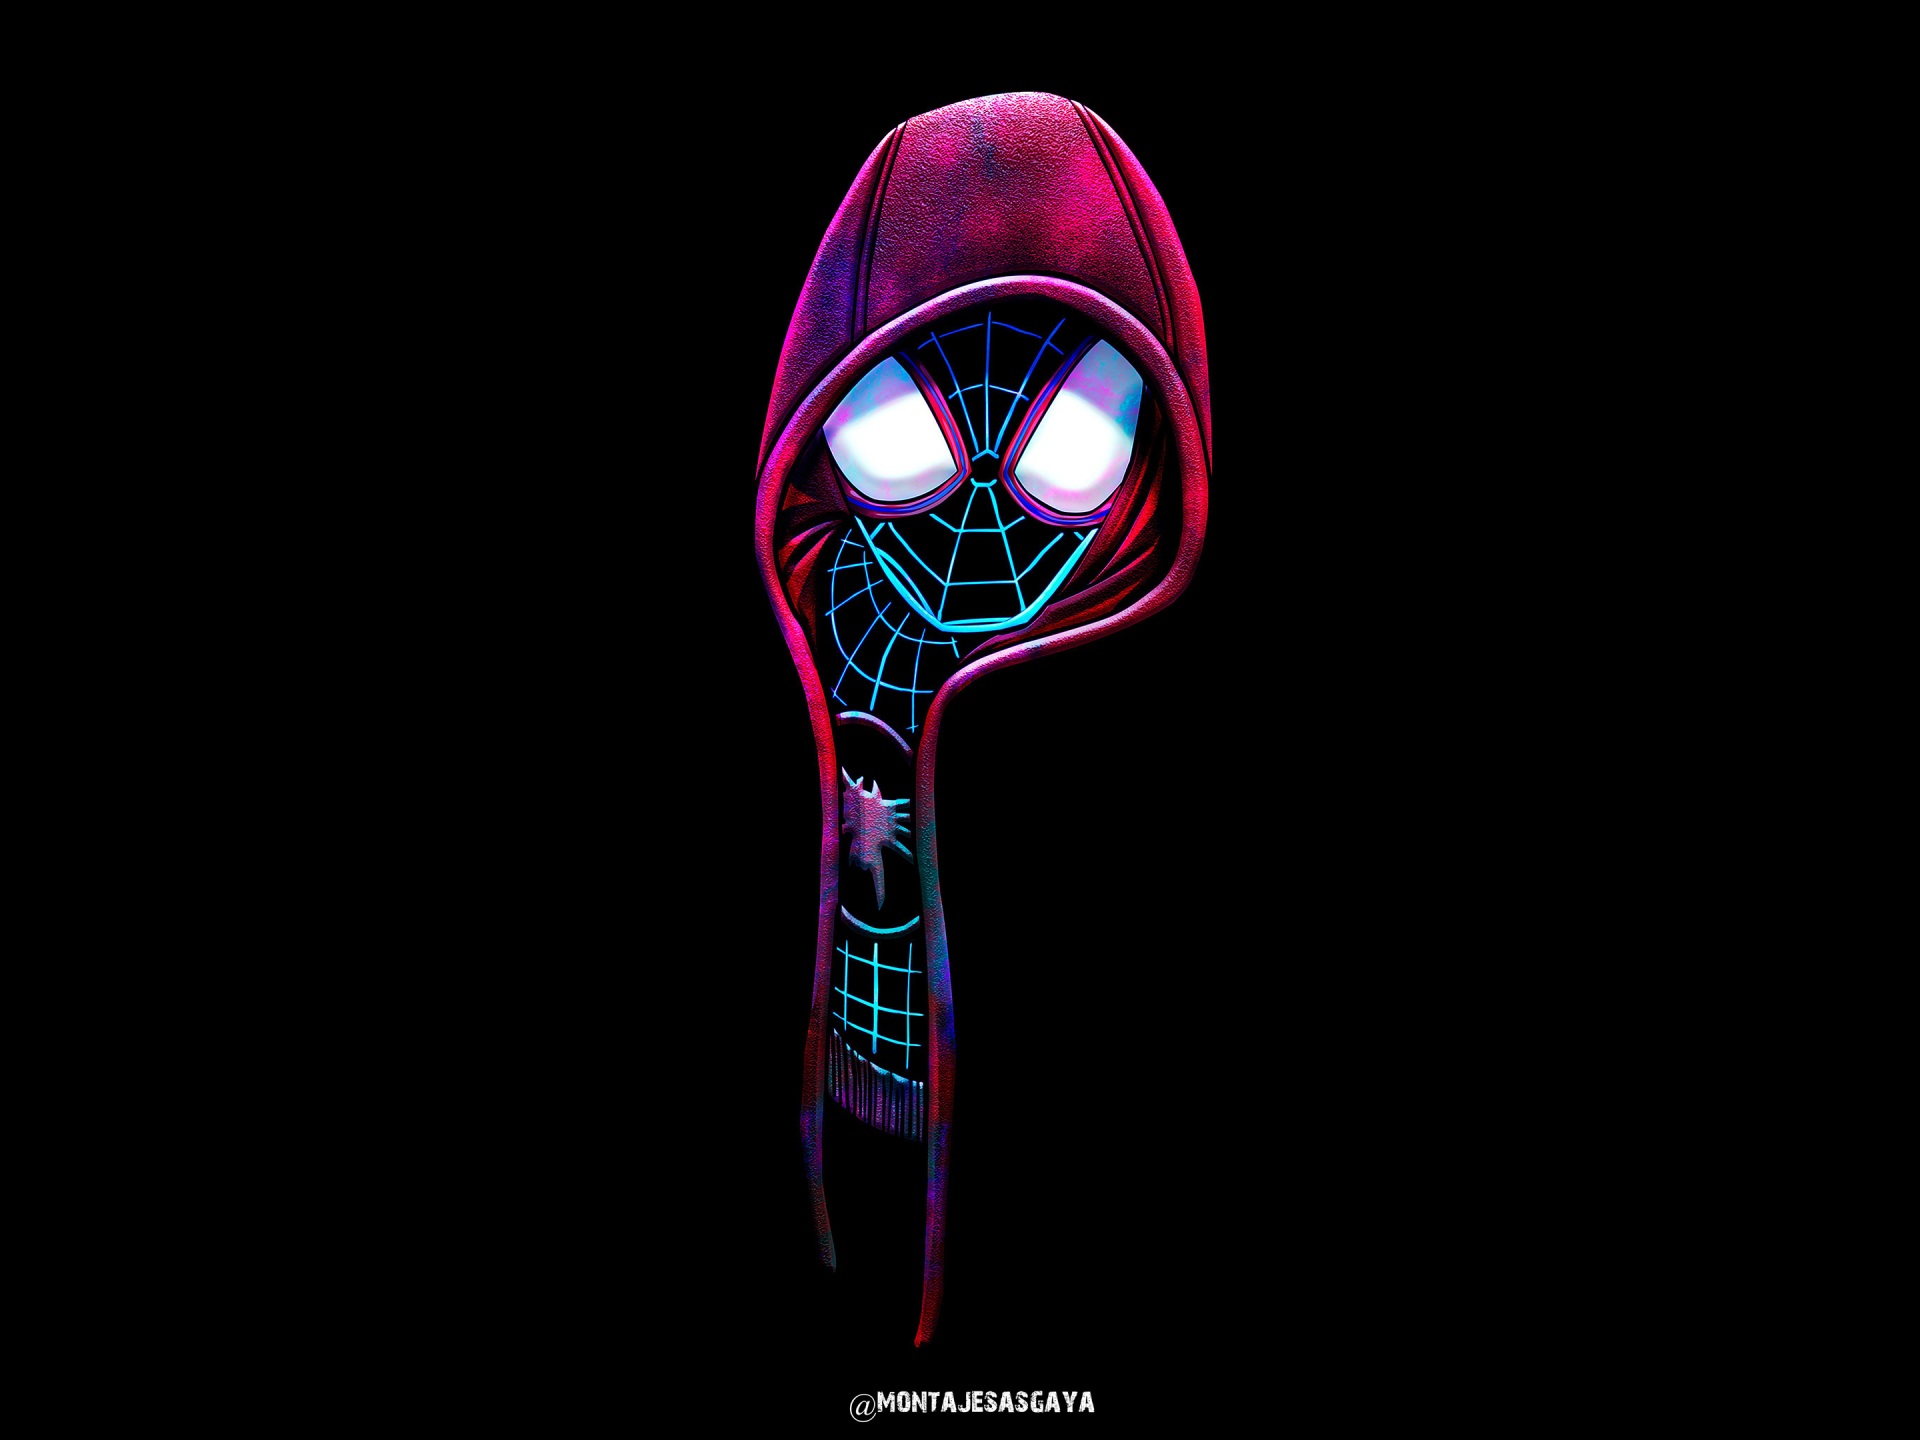 Spiderman: Hãy khám phá hình ảnh về siêu anh hùng Spiderman, người được trang bị những kỹ năng đặc biệt để bảo vệ thành phố! Cùng ngắm nhìn động tác nhanh nhẹn và phong cách đầy quyết đoán của anh ta trên các tấm ảnh sắc nét!